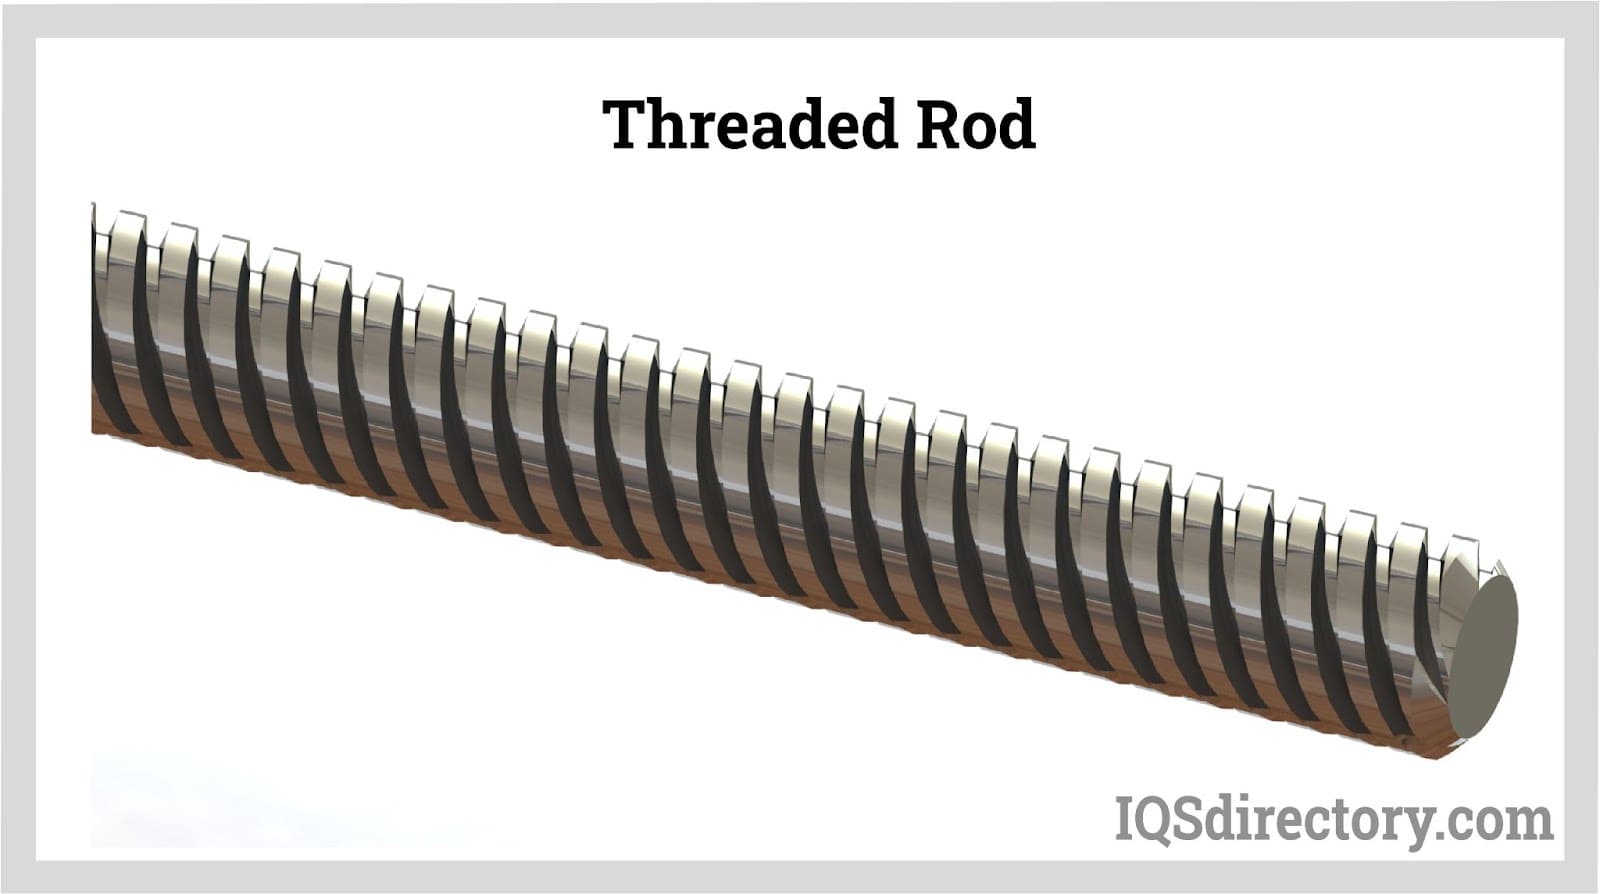 threaded rod